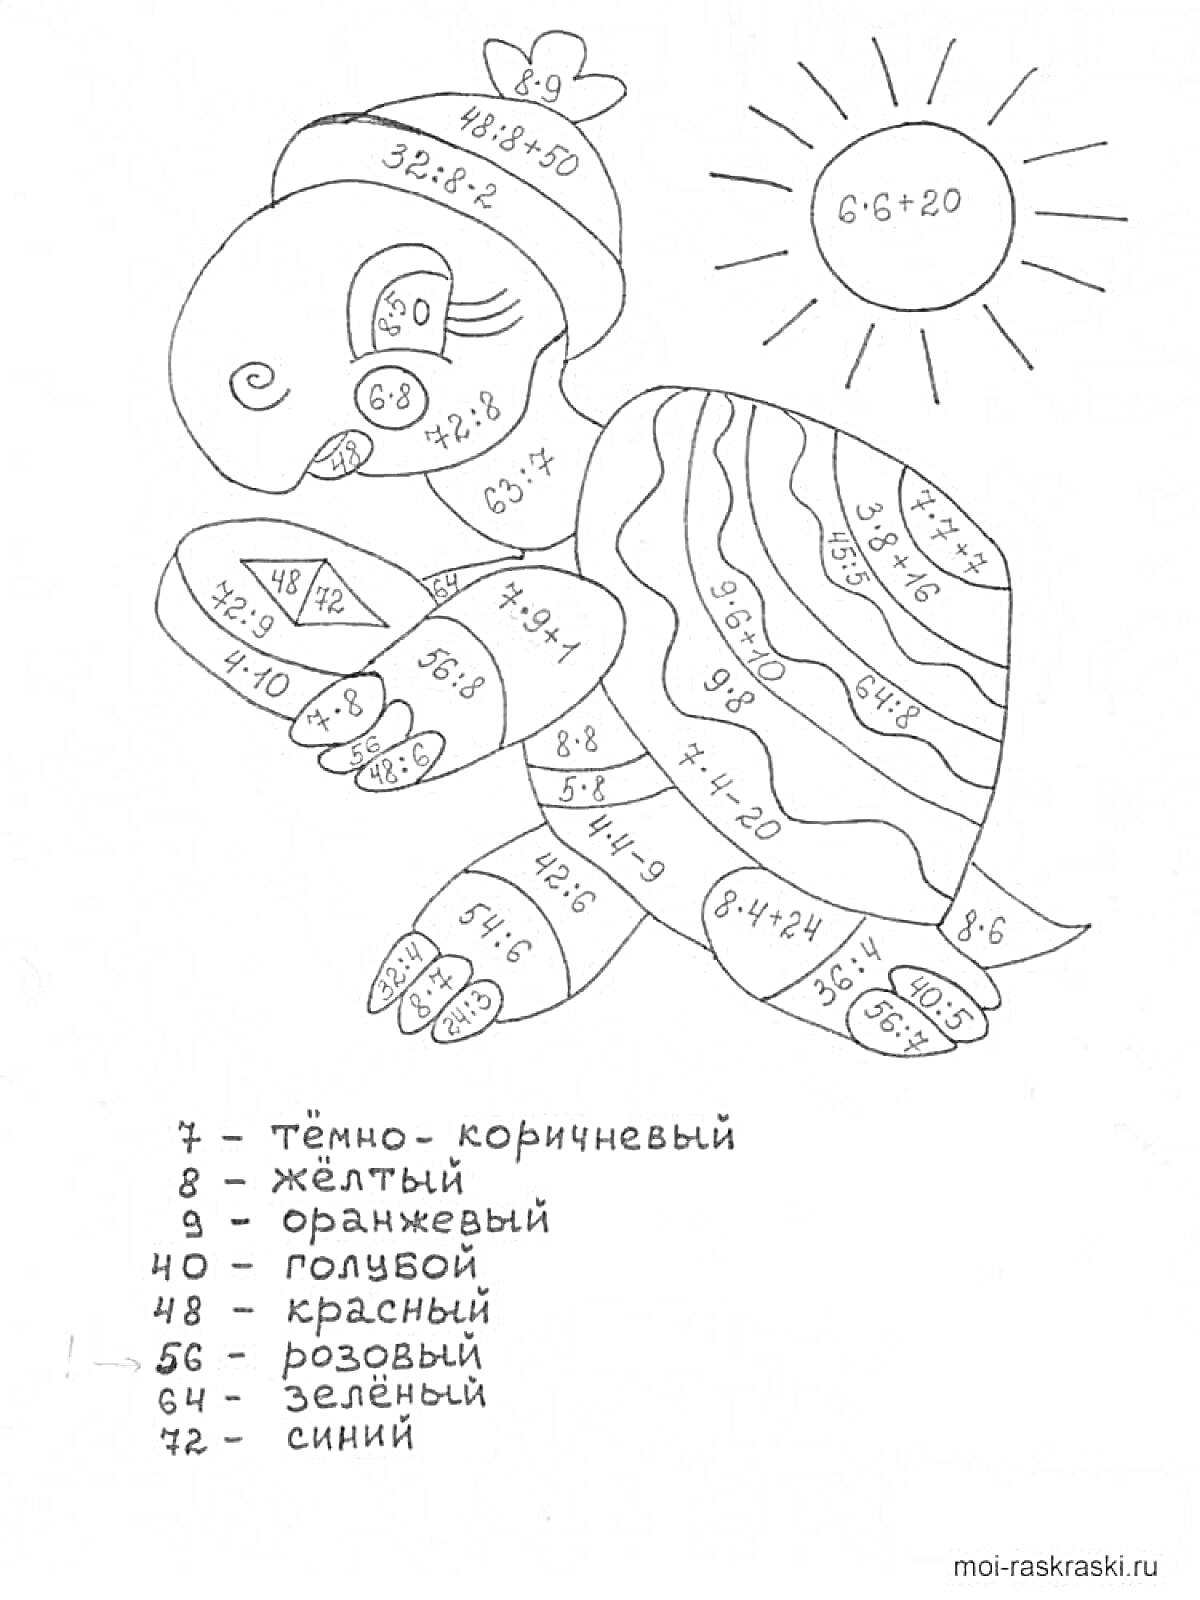 Раскраска Черепаха с задачами по математике на панцире и солнце